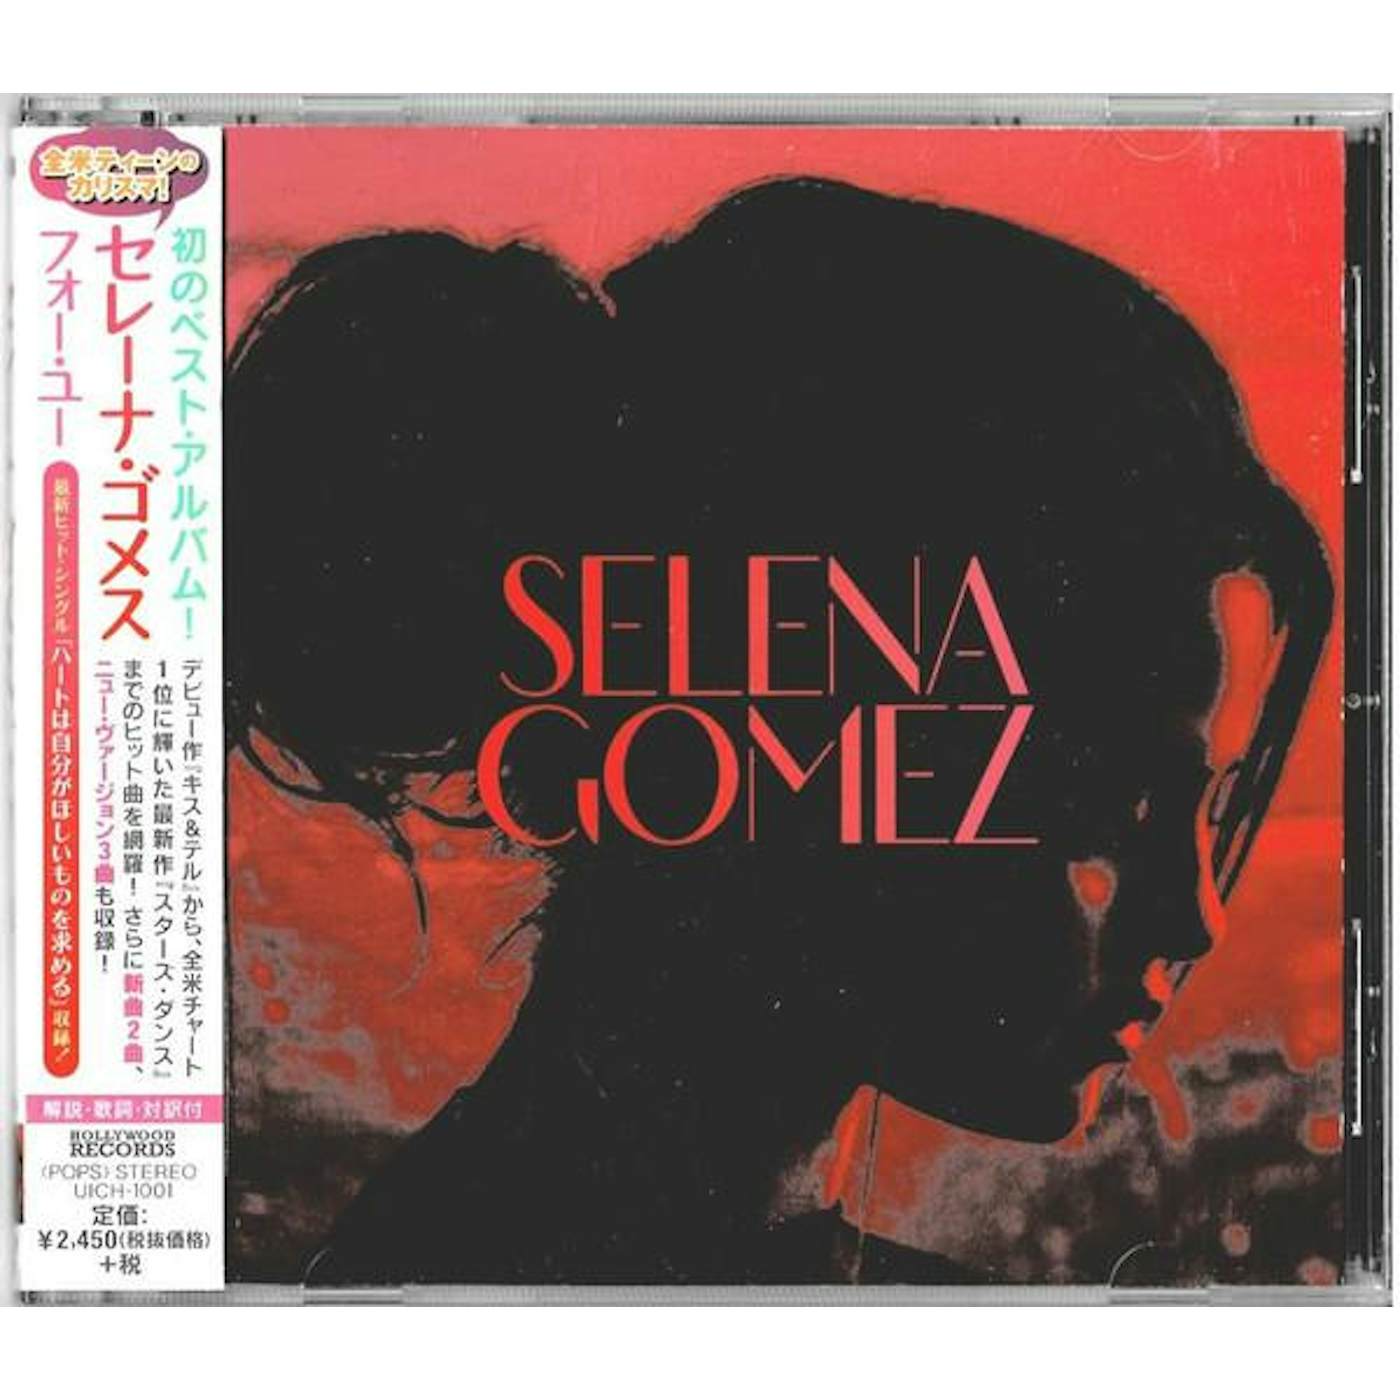 Selena Gomez FOR YOU CD